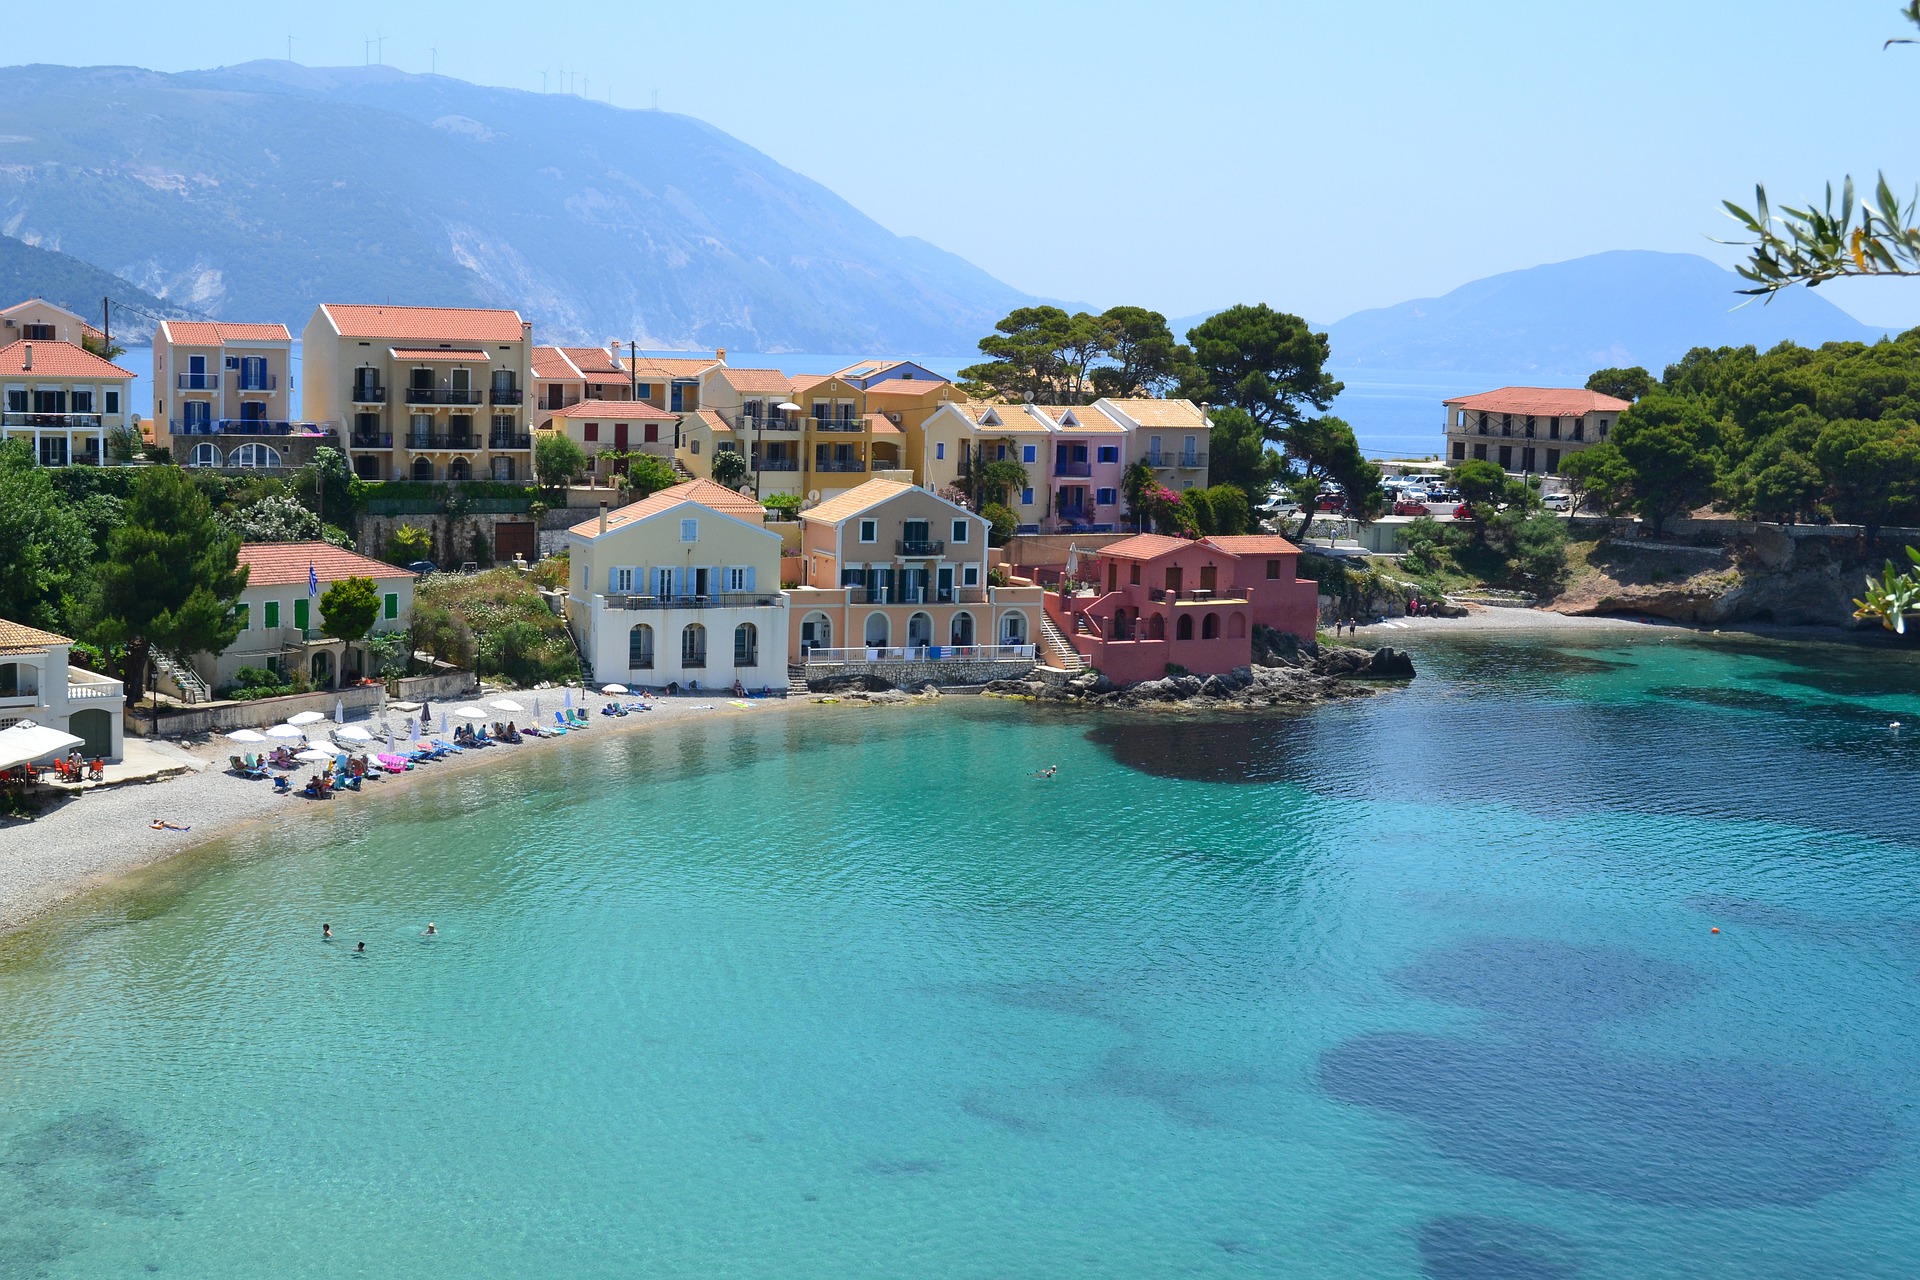 Туроператоры с июля начнут возить туристов в Грецию на рейсах Aegean Airlines